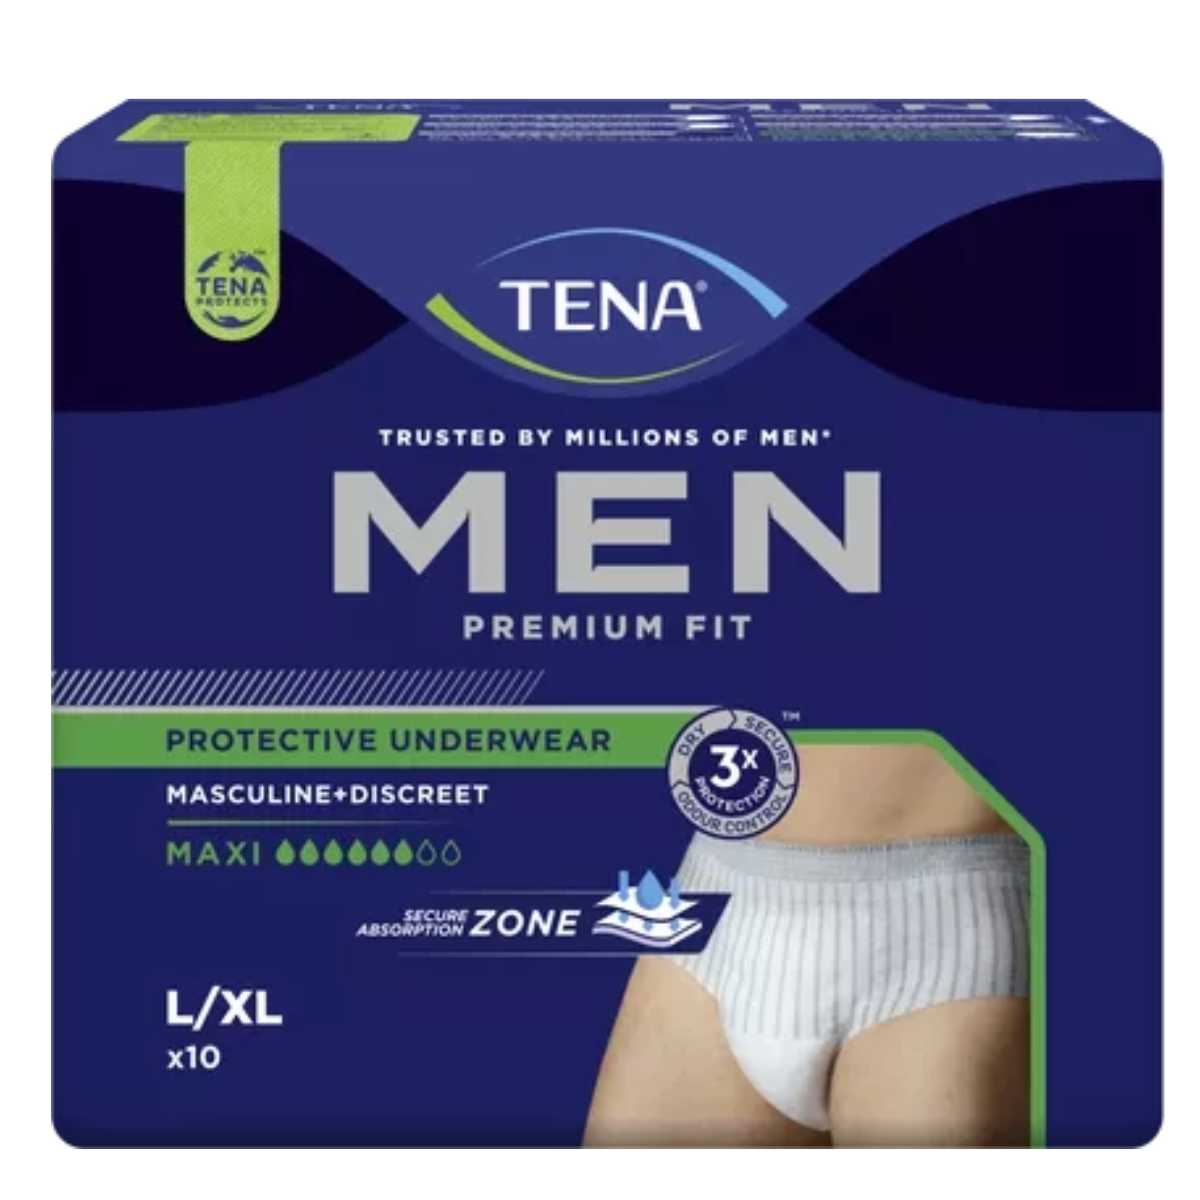 Tena Men Premium Fit Protective Underwear Maxi Talla L 10 Calzoncillos  Absorbentes